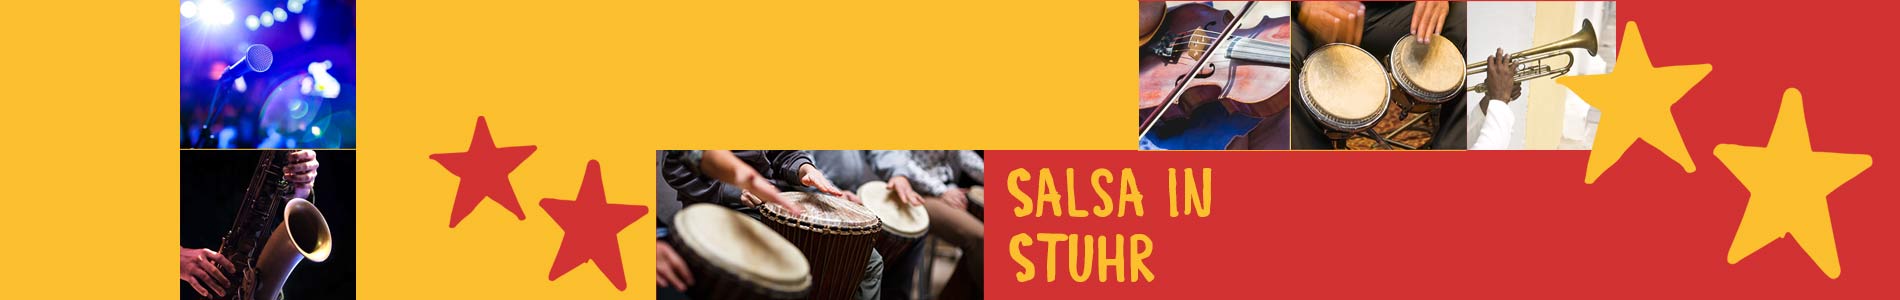 Salsa in Stuhr – Salsa lernen und tanzen, Tanzkurse, Partys, Veranstaltungen